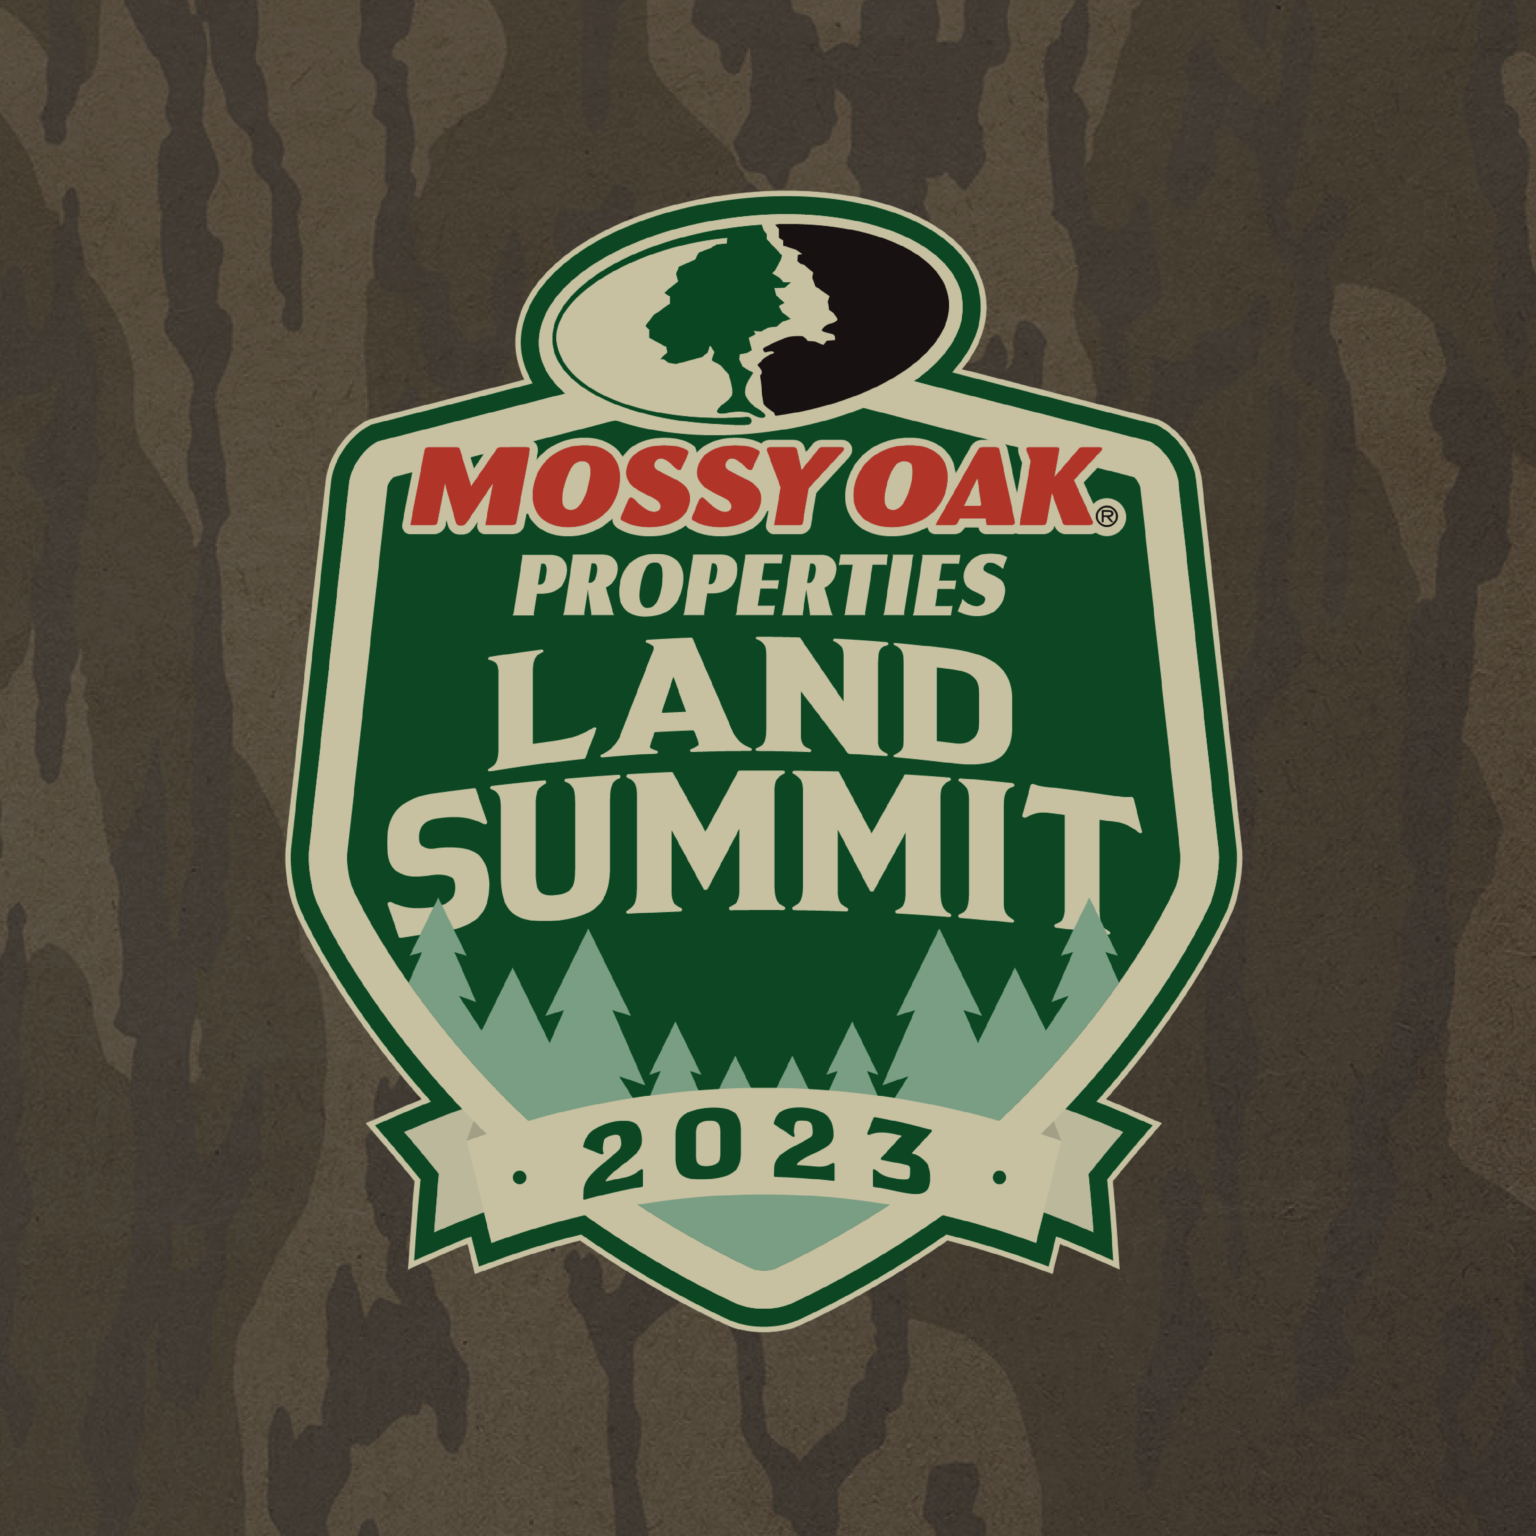 mossy oak properties land summit